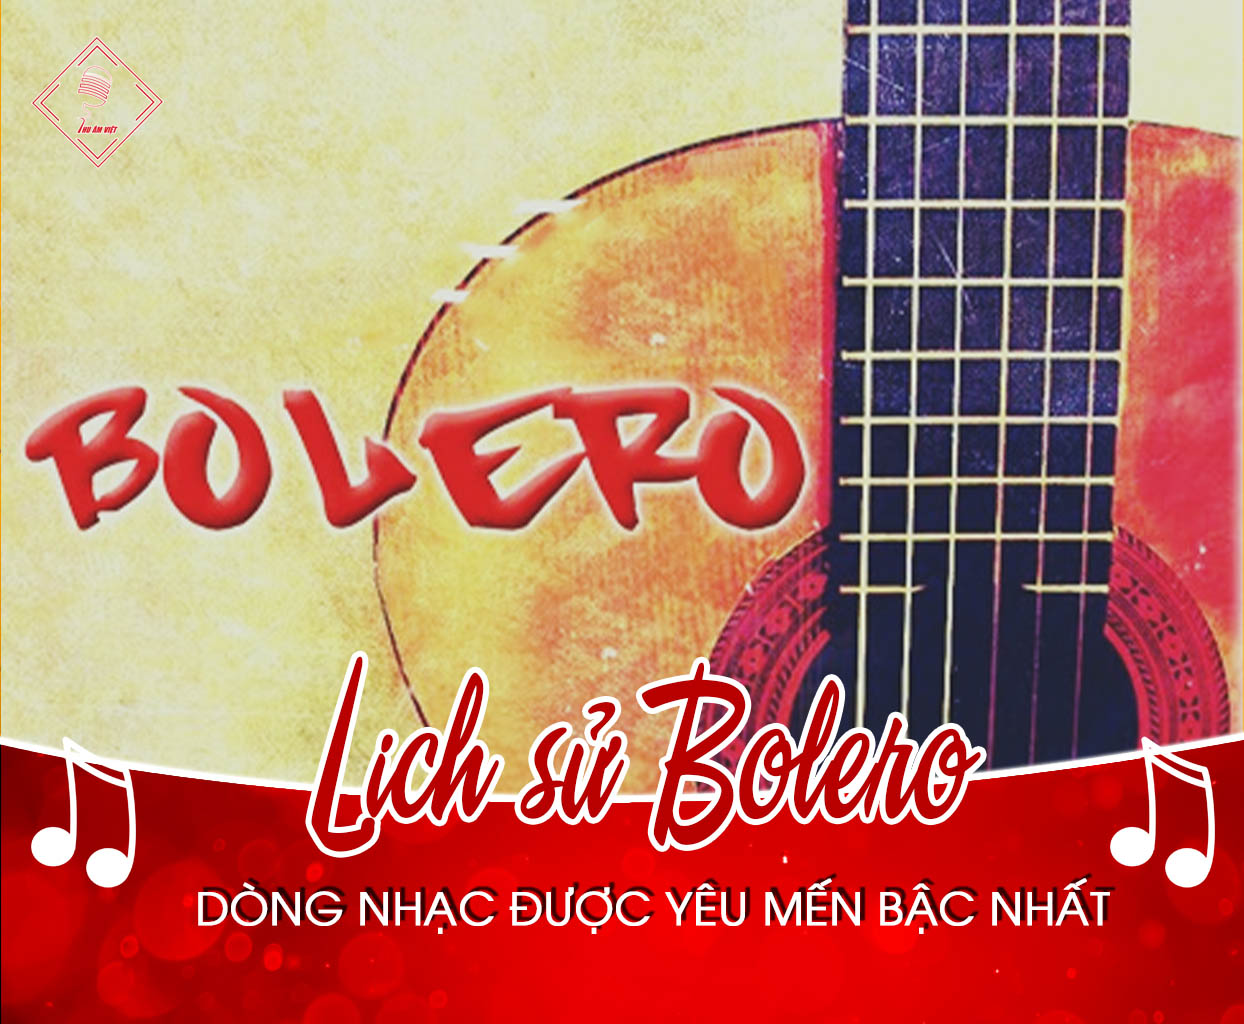 Tìm hiểu lịch sử dòng nhạc Bolero và Bolero trong đời sống hiện nay